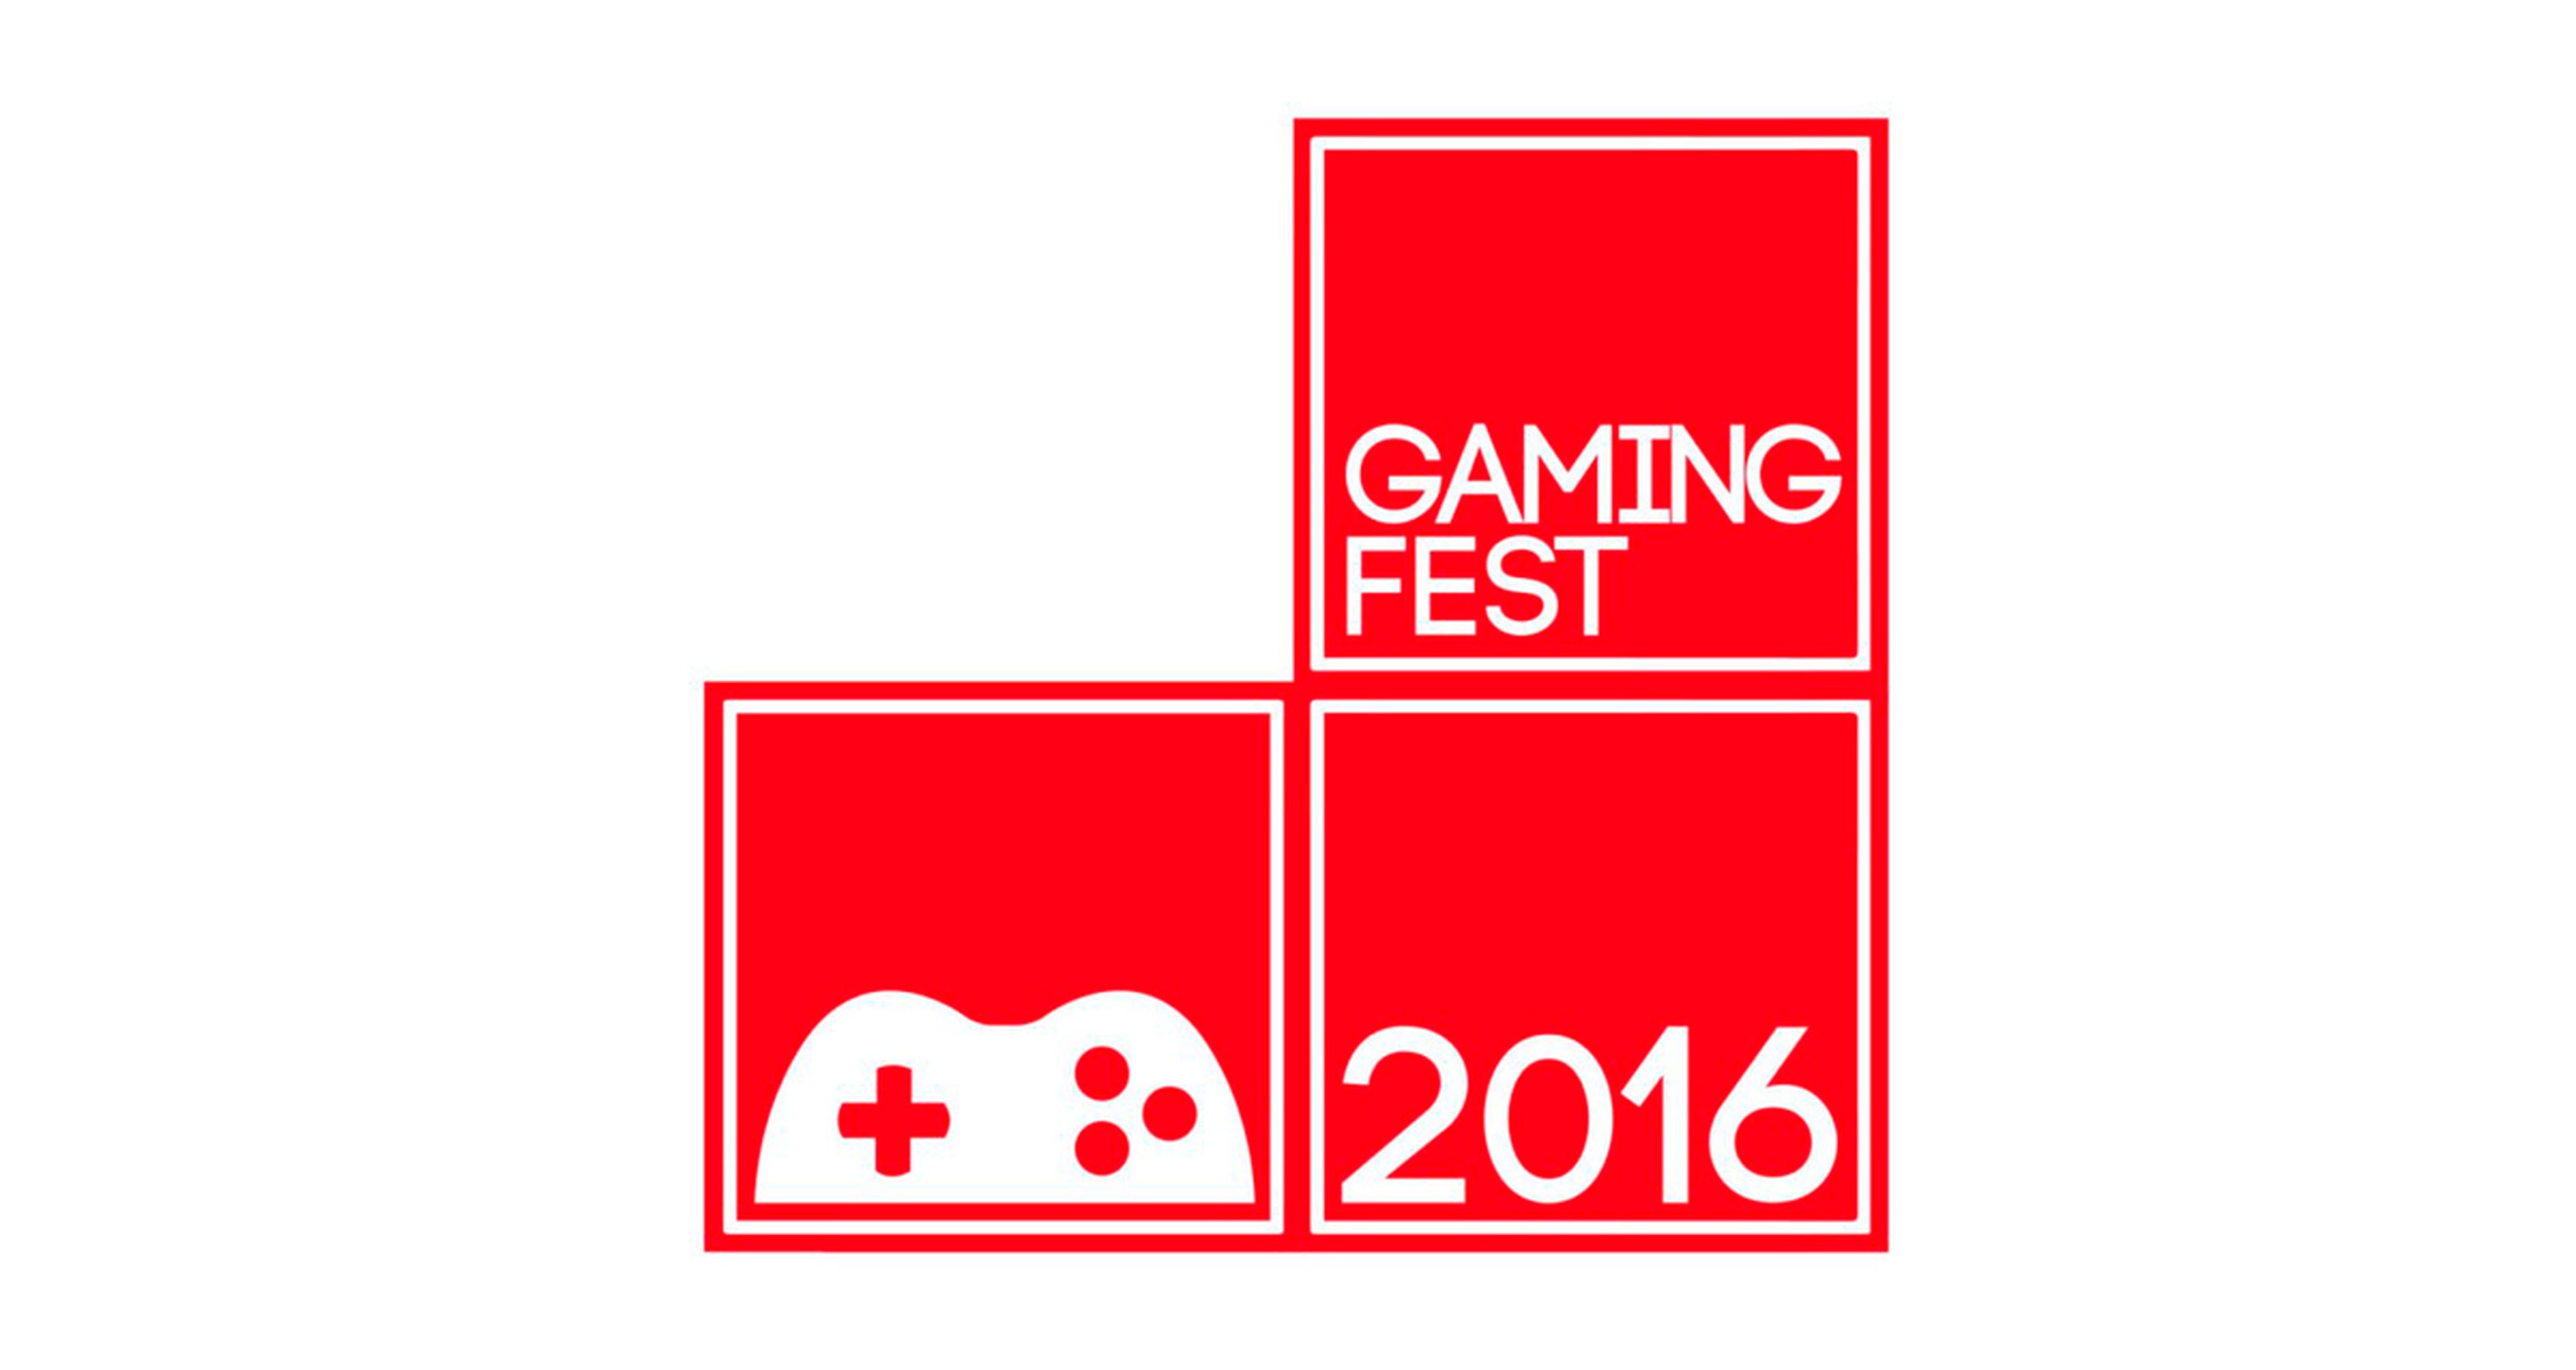 Gamingfest 2016